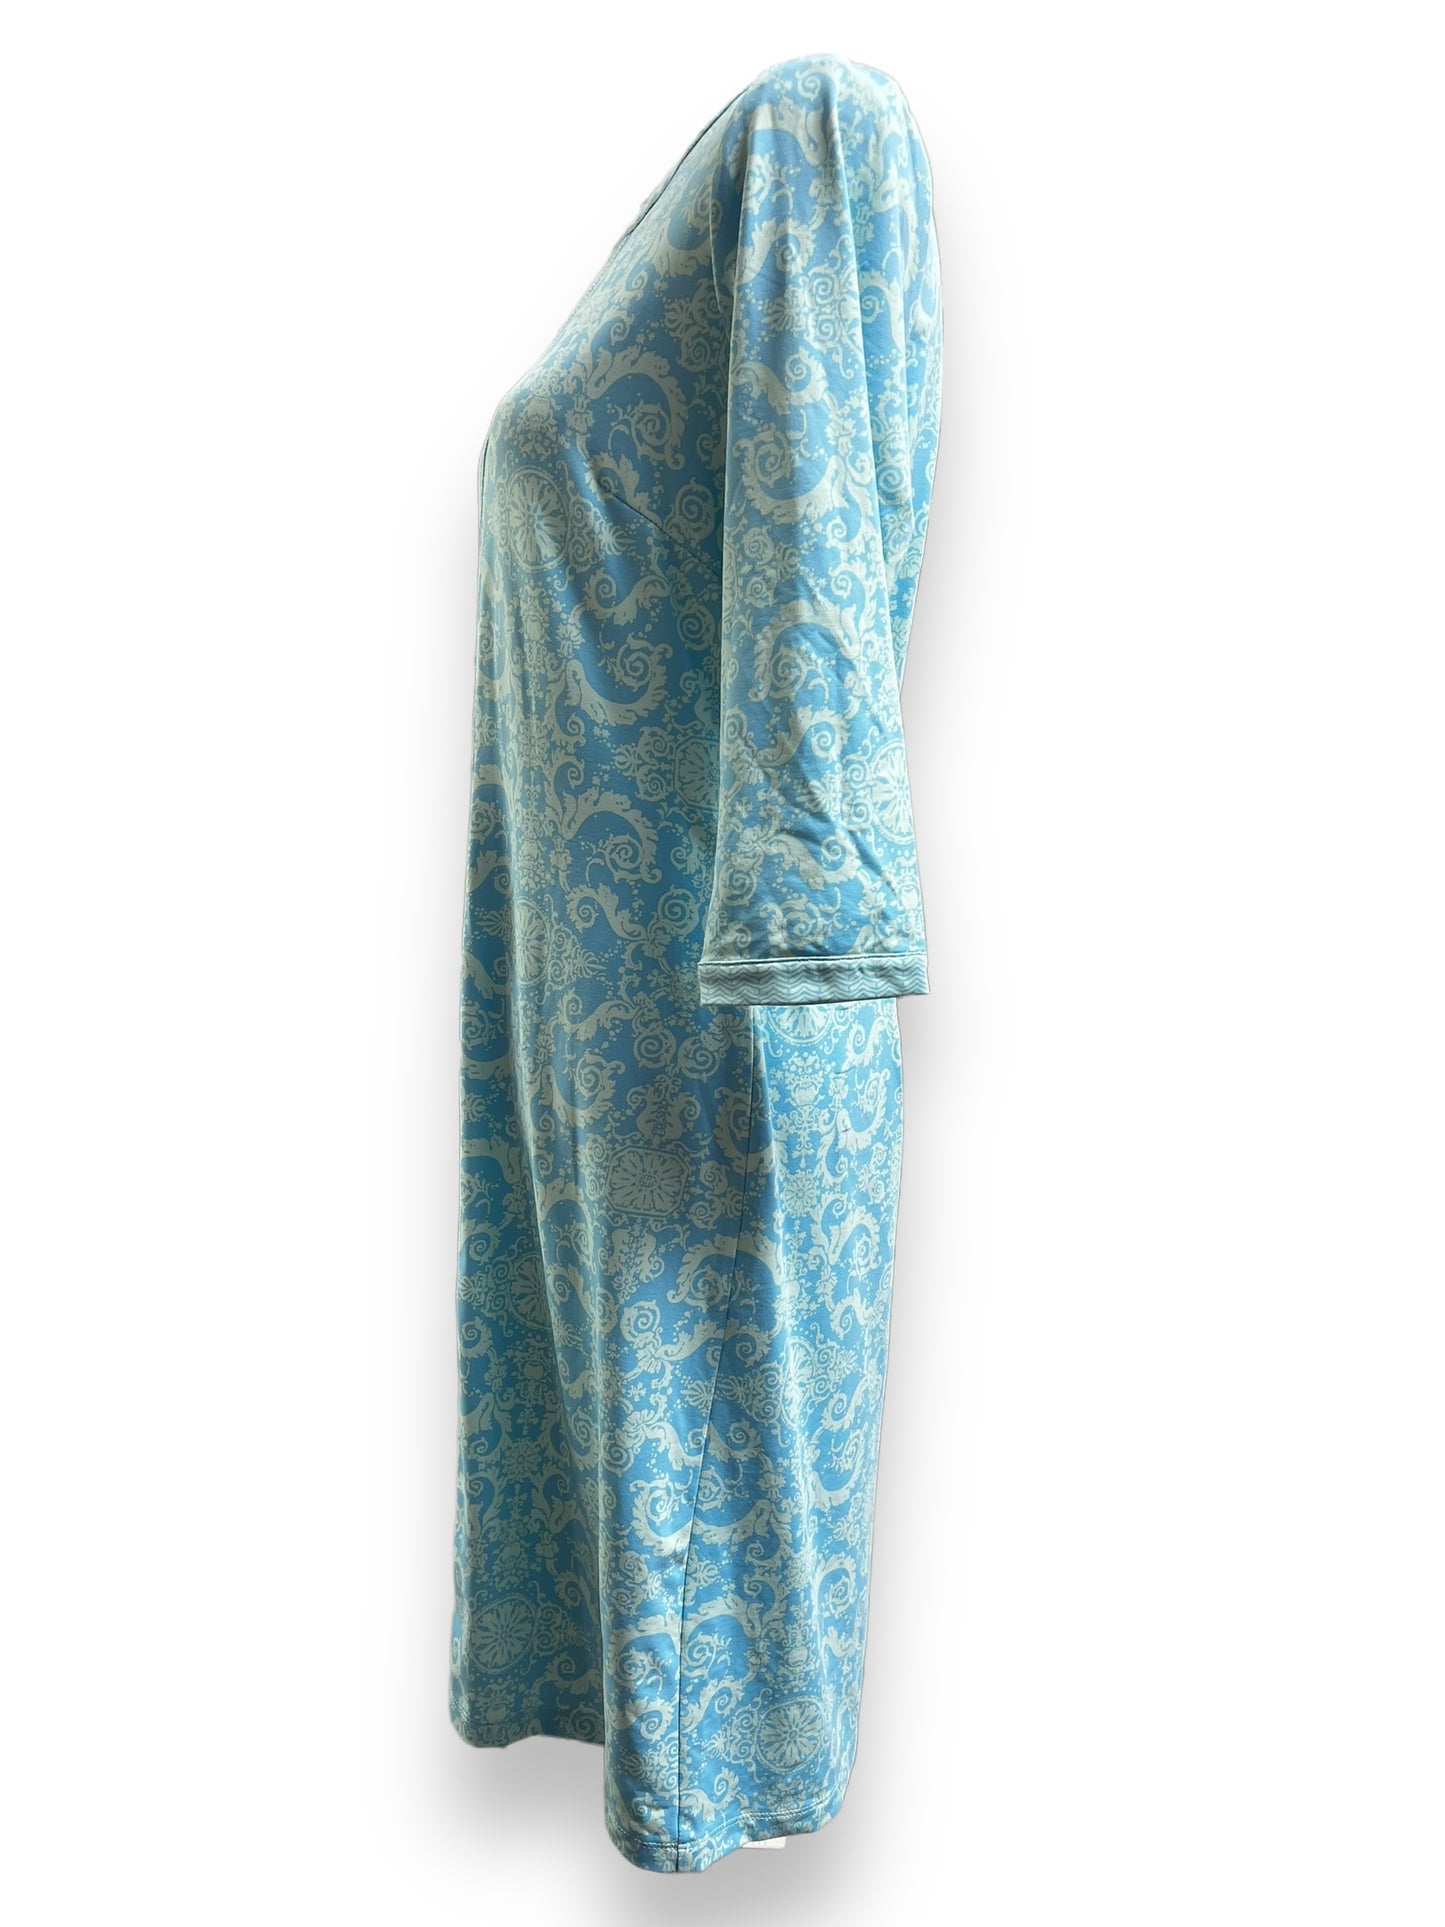 J. Mclaughlin Women's Light Blue Floral Dress. Size Medium